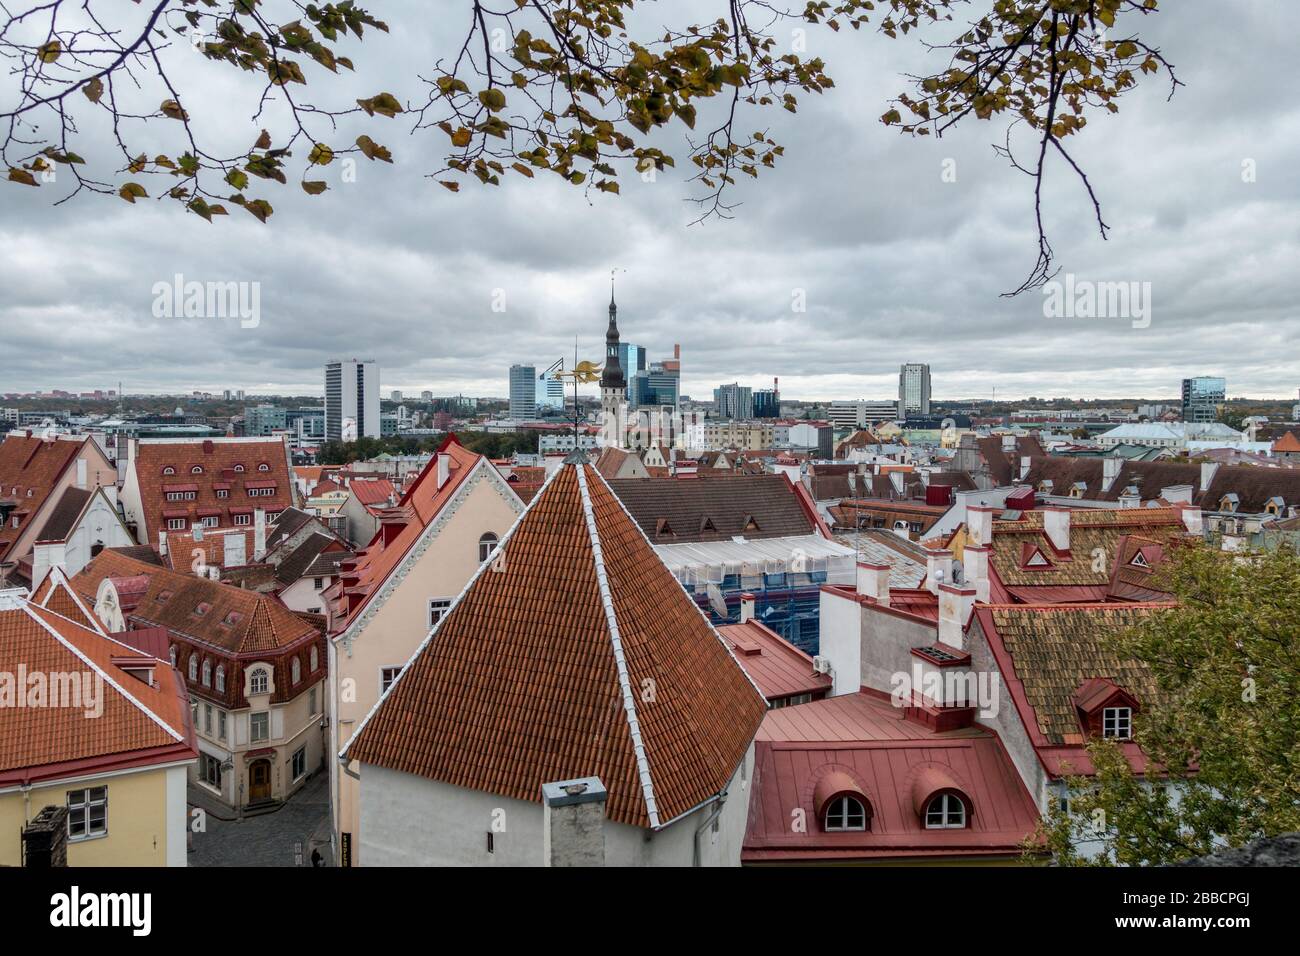 Vista della città dal centro storico, patrimonio dell'umanità dell'UNESCO, verso la città nuova, Tallinn, Estonia Foto Stock